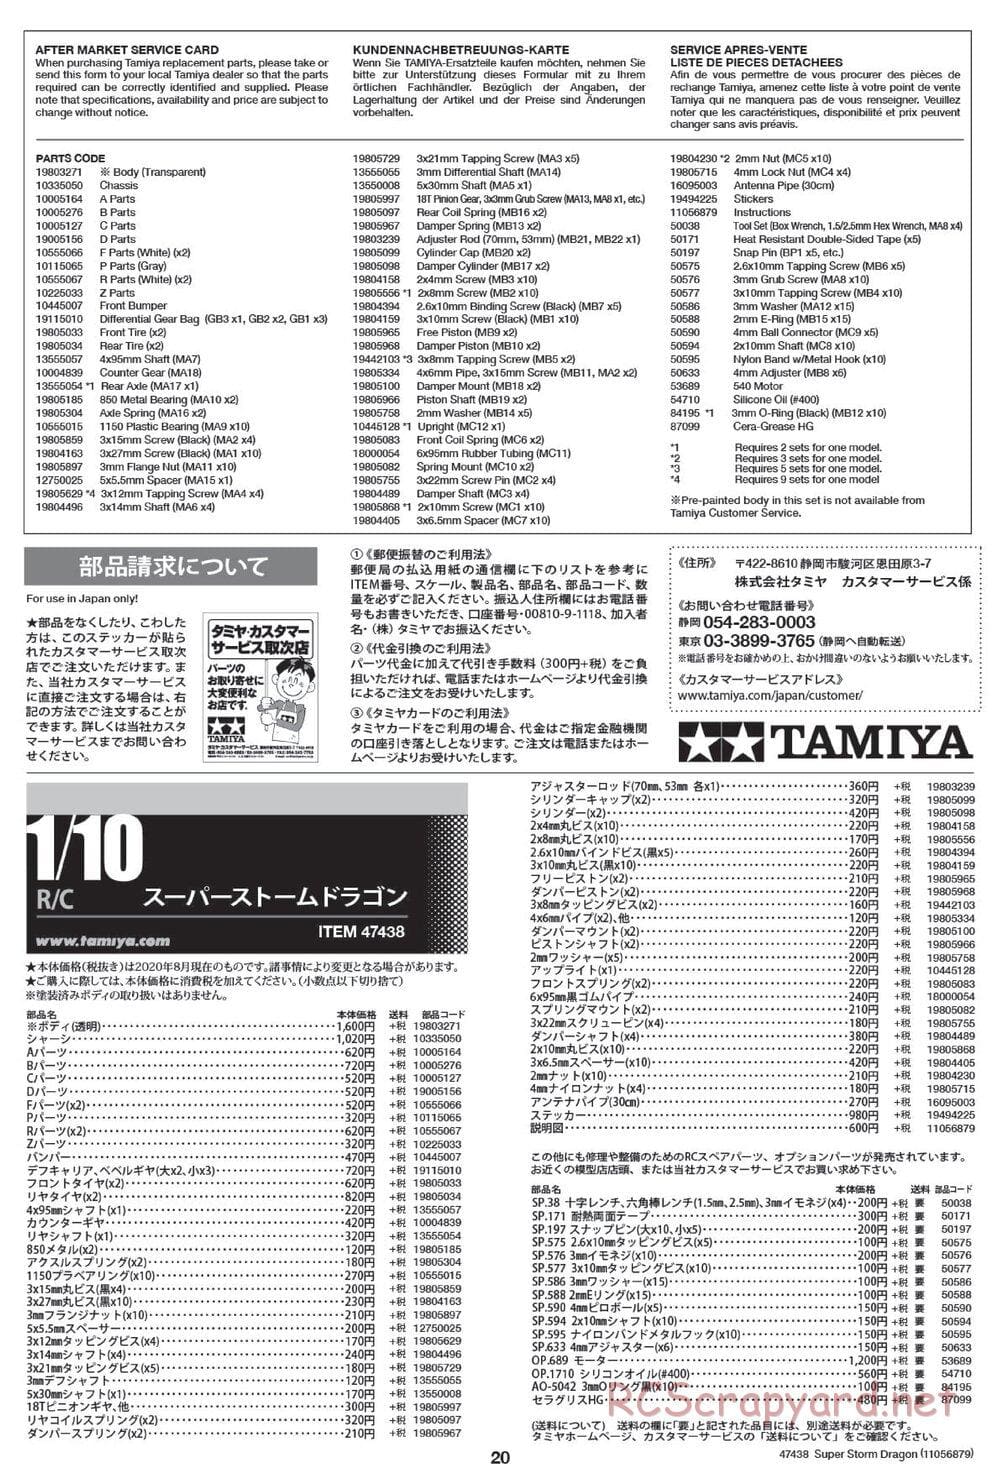 Tamiya - Super Storm Dragon Chassis - Manual - Page 20